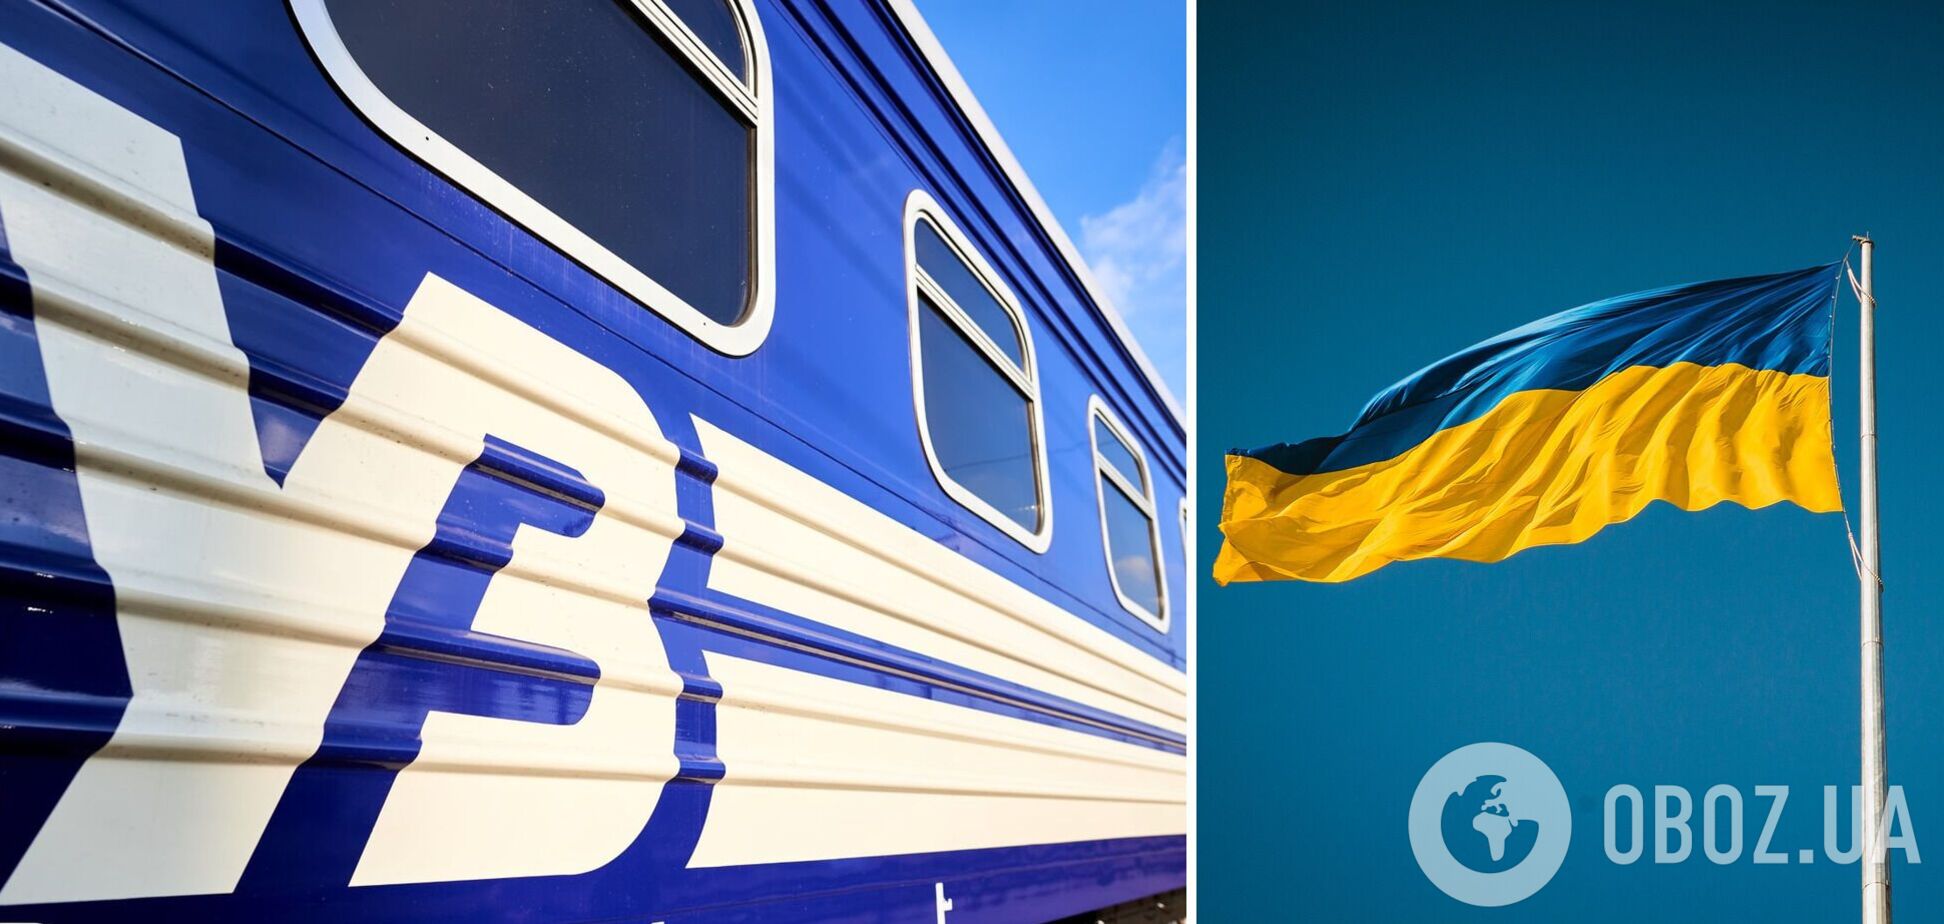 'Укрзалізниця' запускает поезд по самому длинному маршруту в Украине